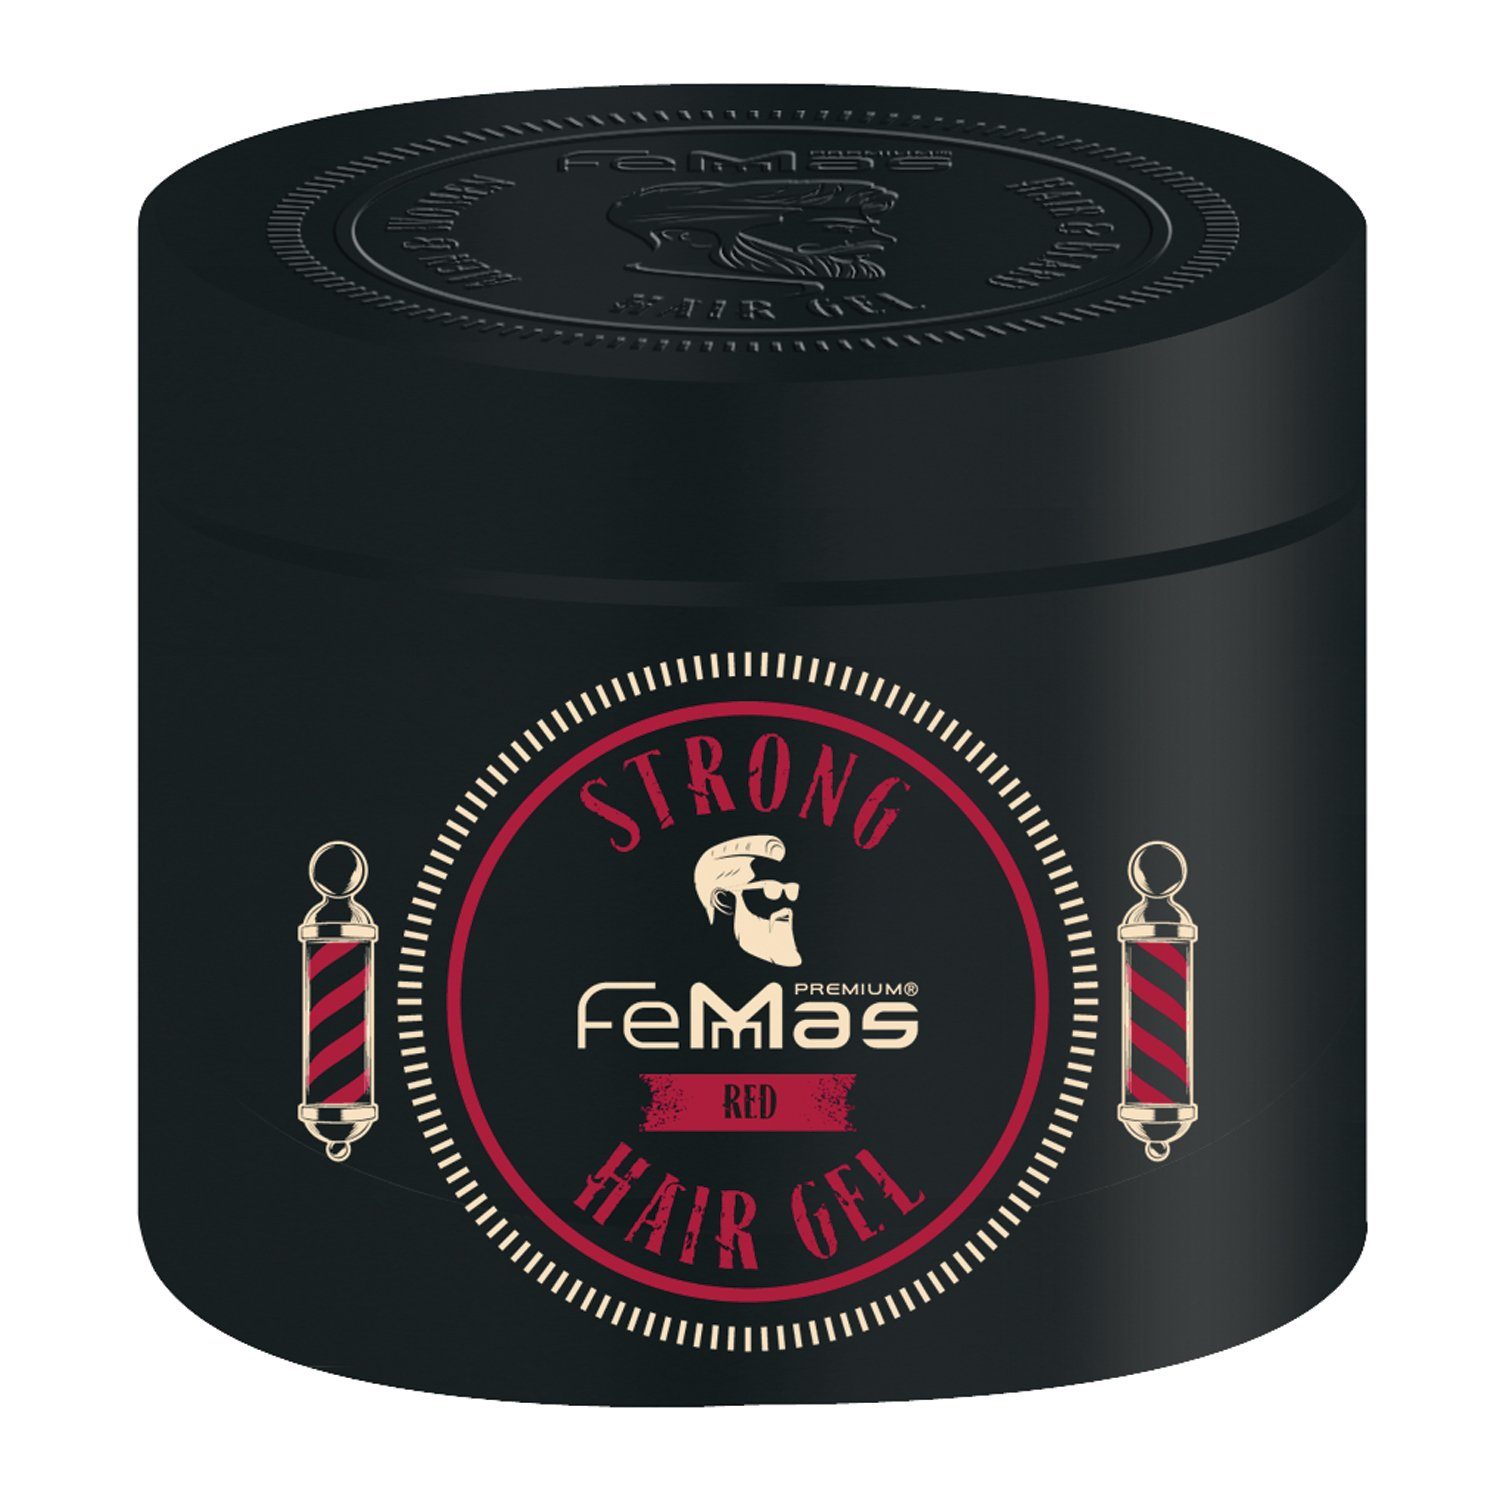 Femmas Premium Haargel FemMas Haargel Strong Red 600ml